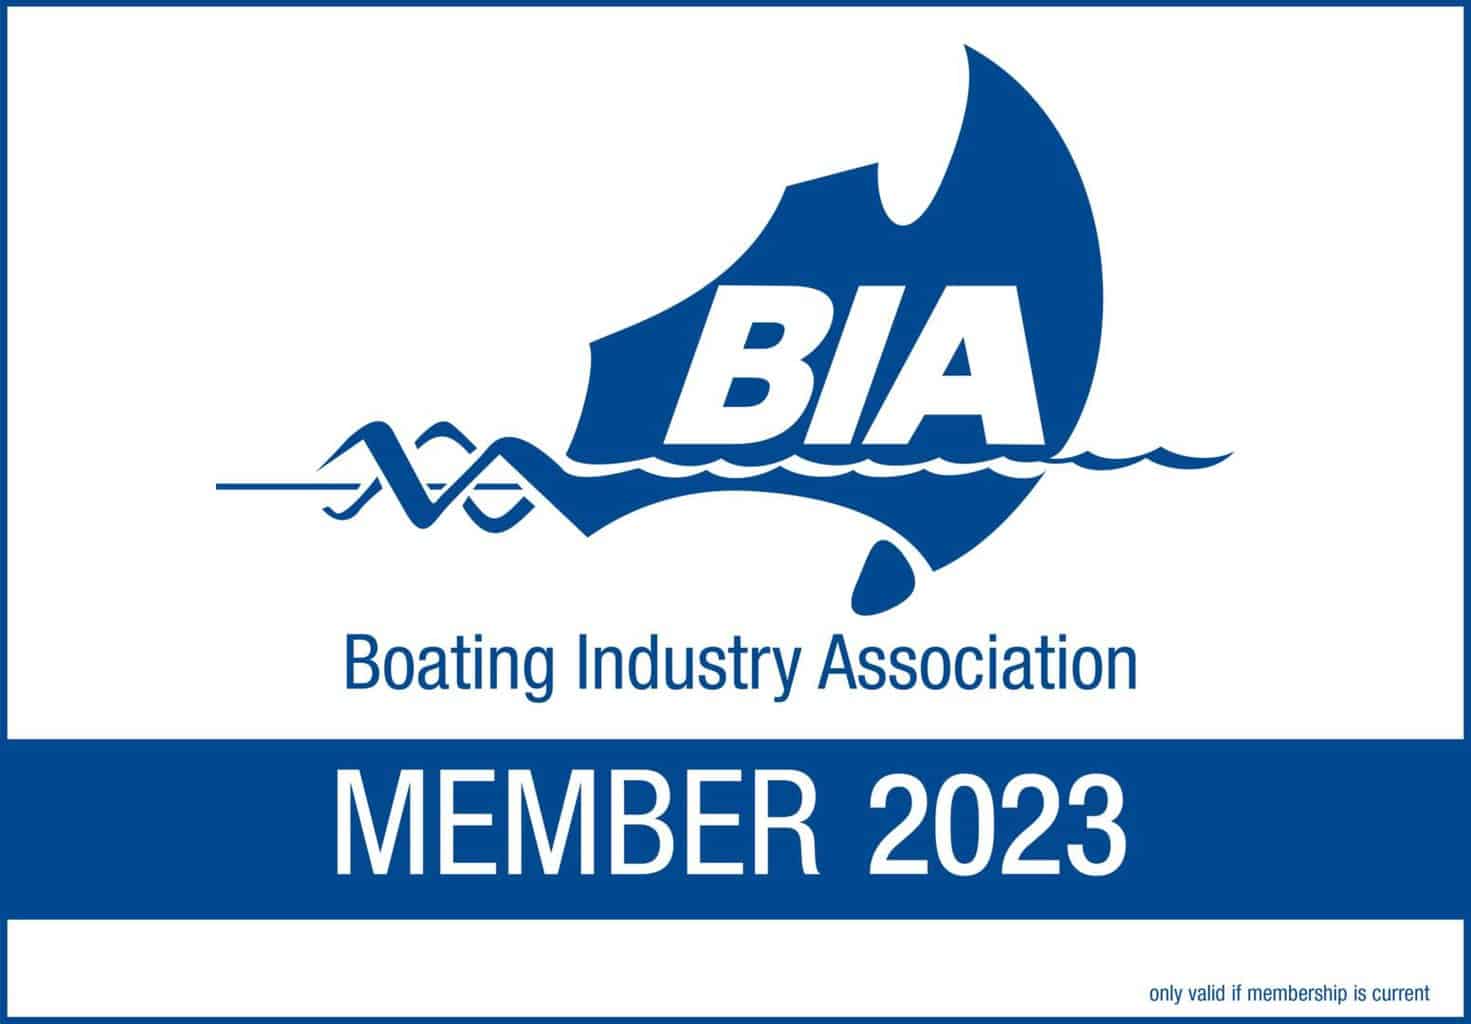 Boating Industry Association Member 2023 Badge